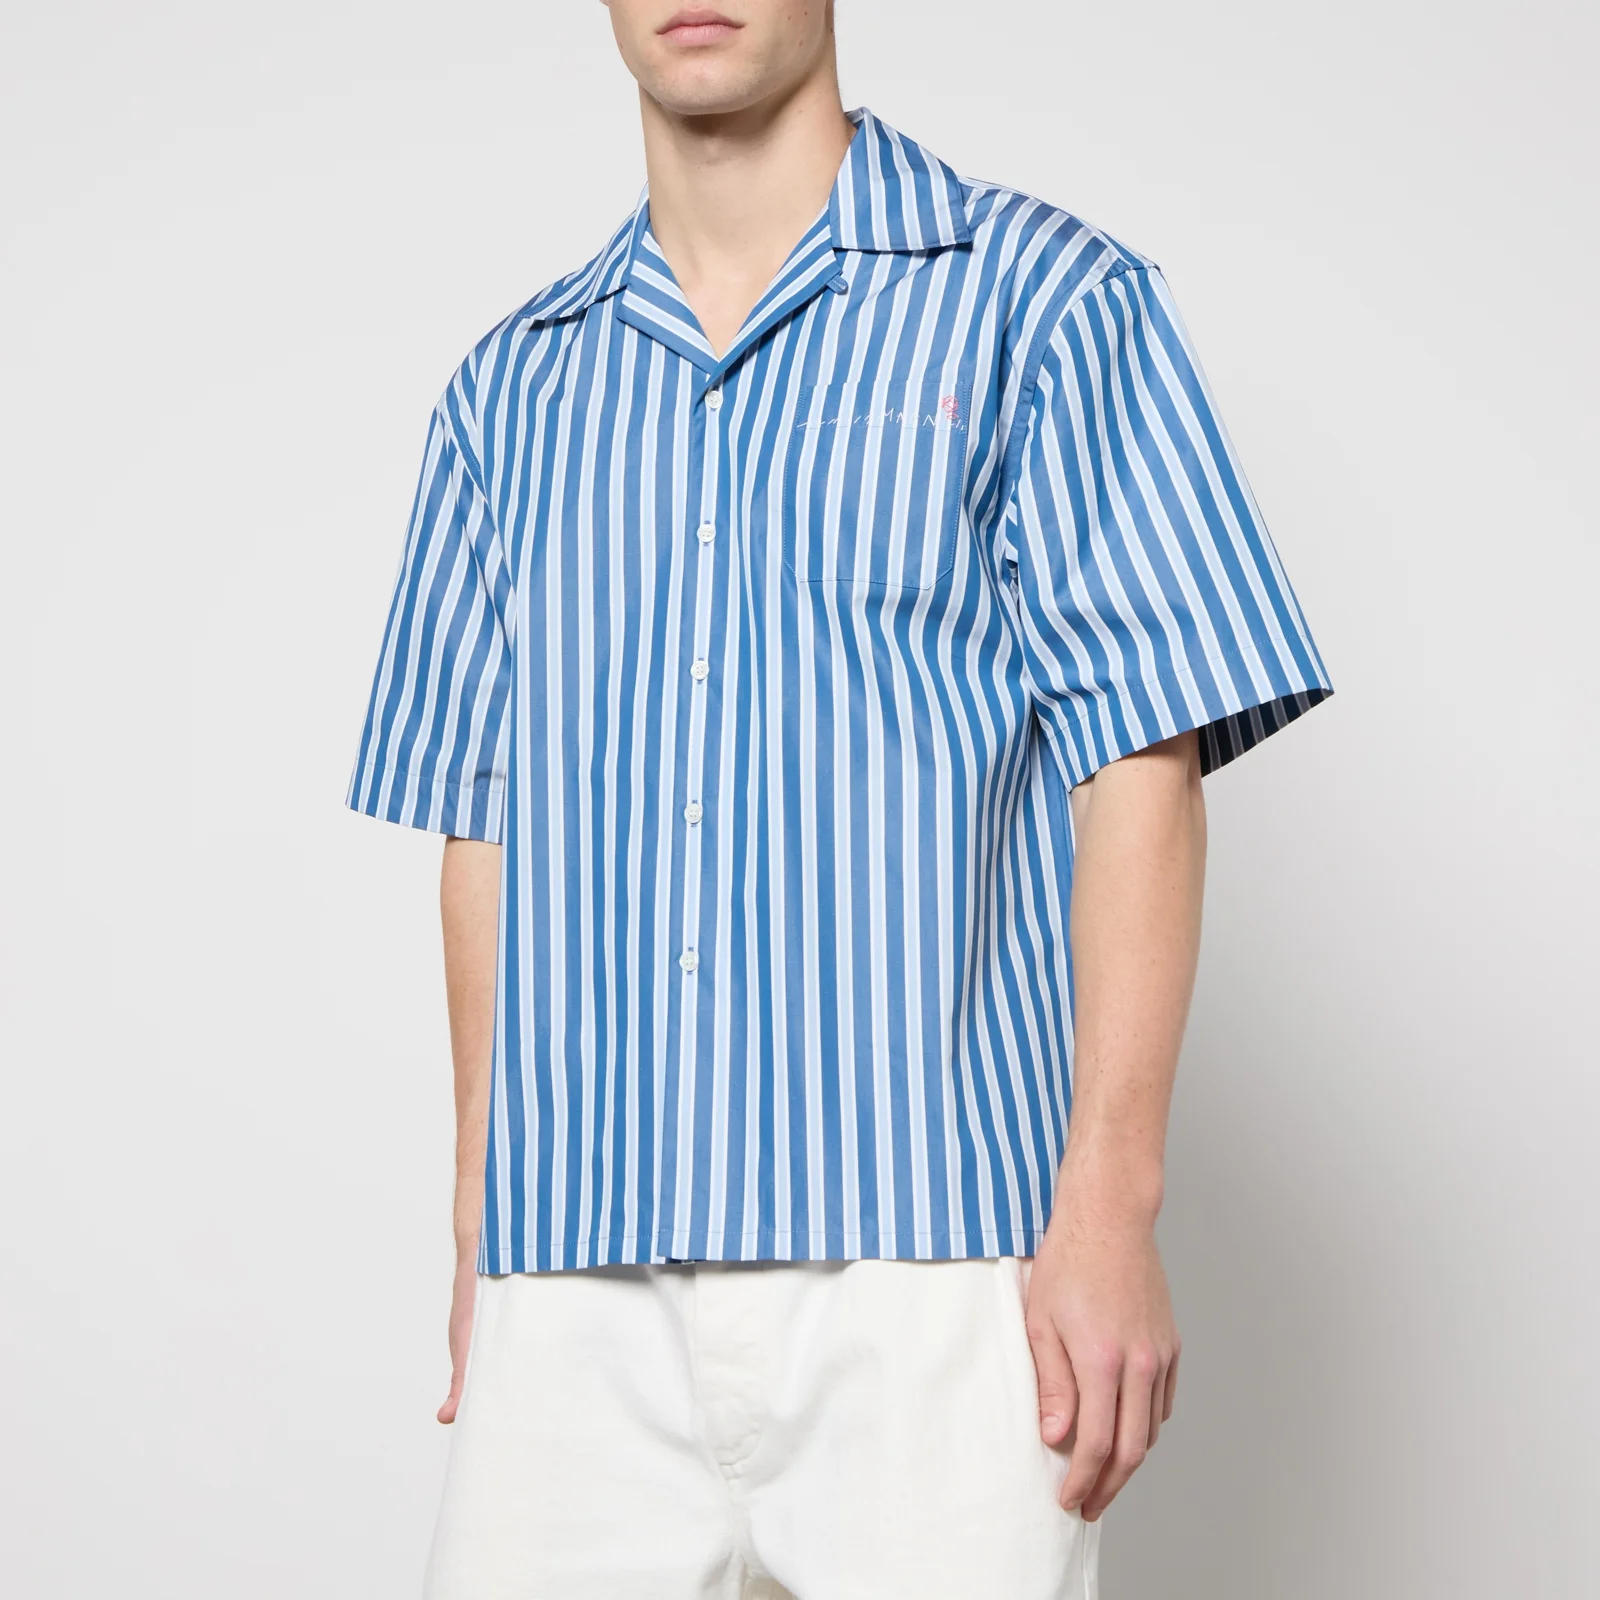 Marni Striped Cotton Shirt - IT 46/S Image 1